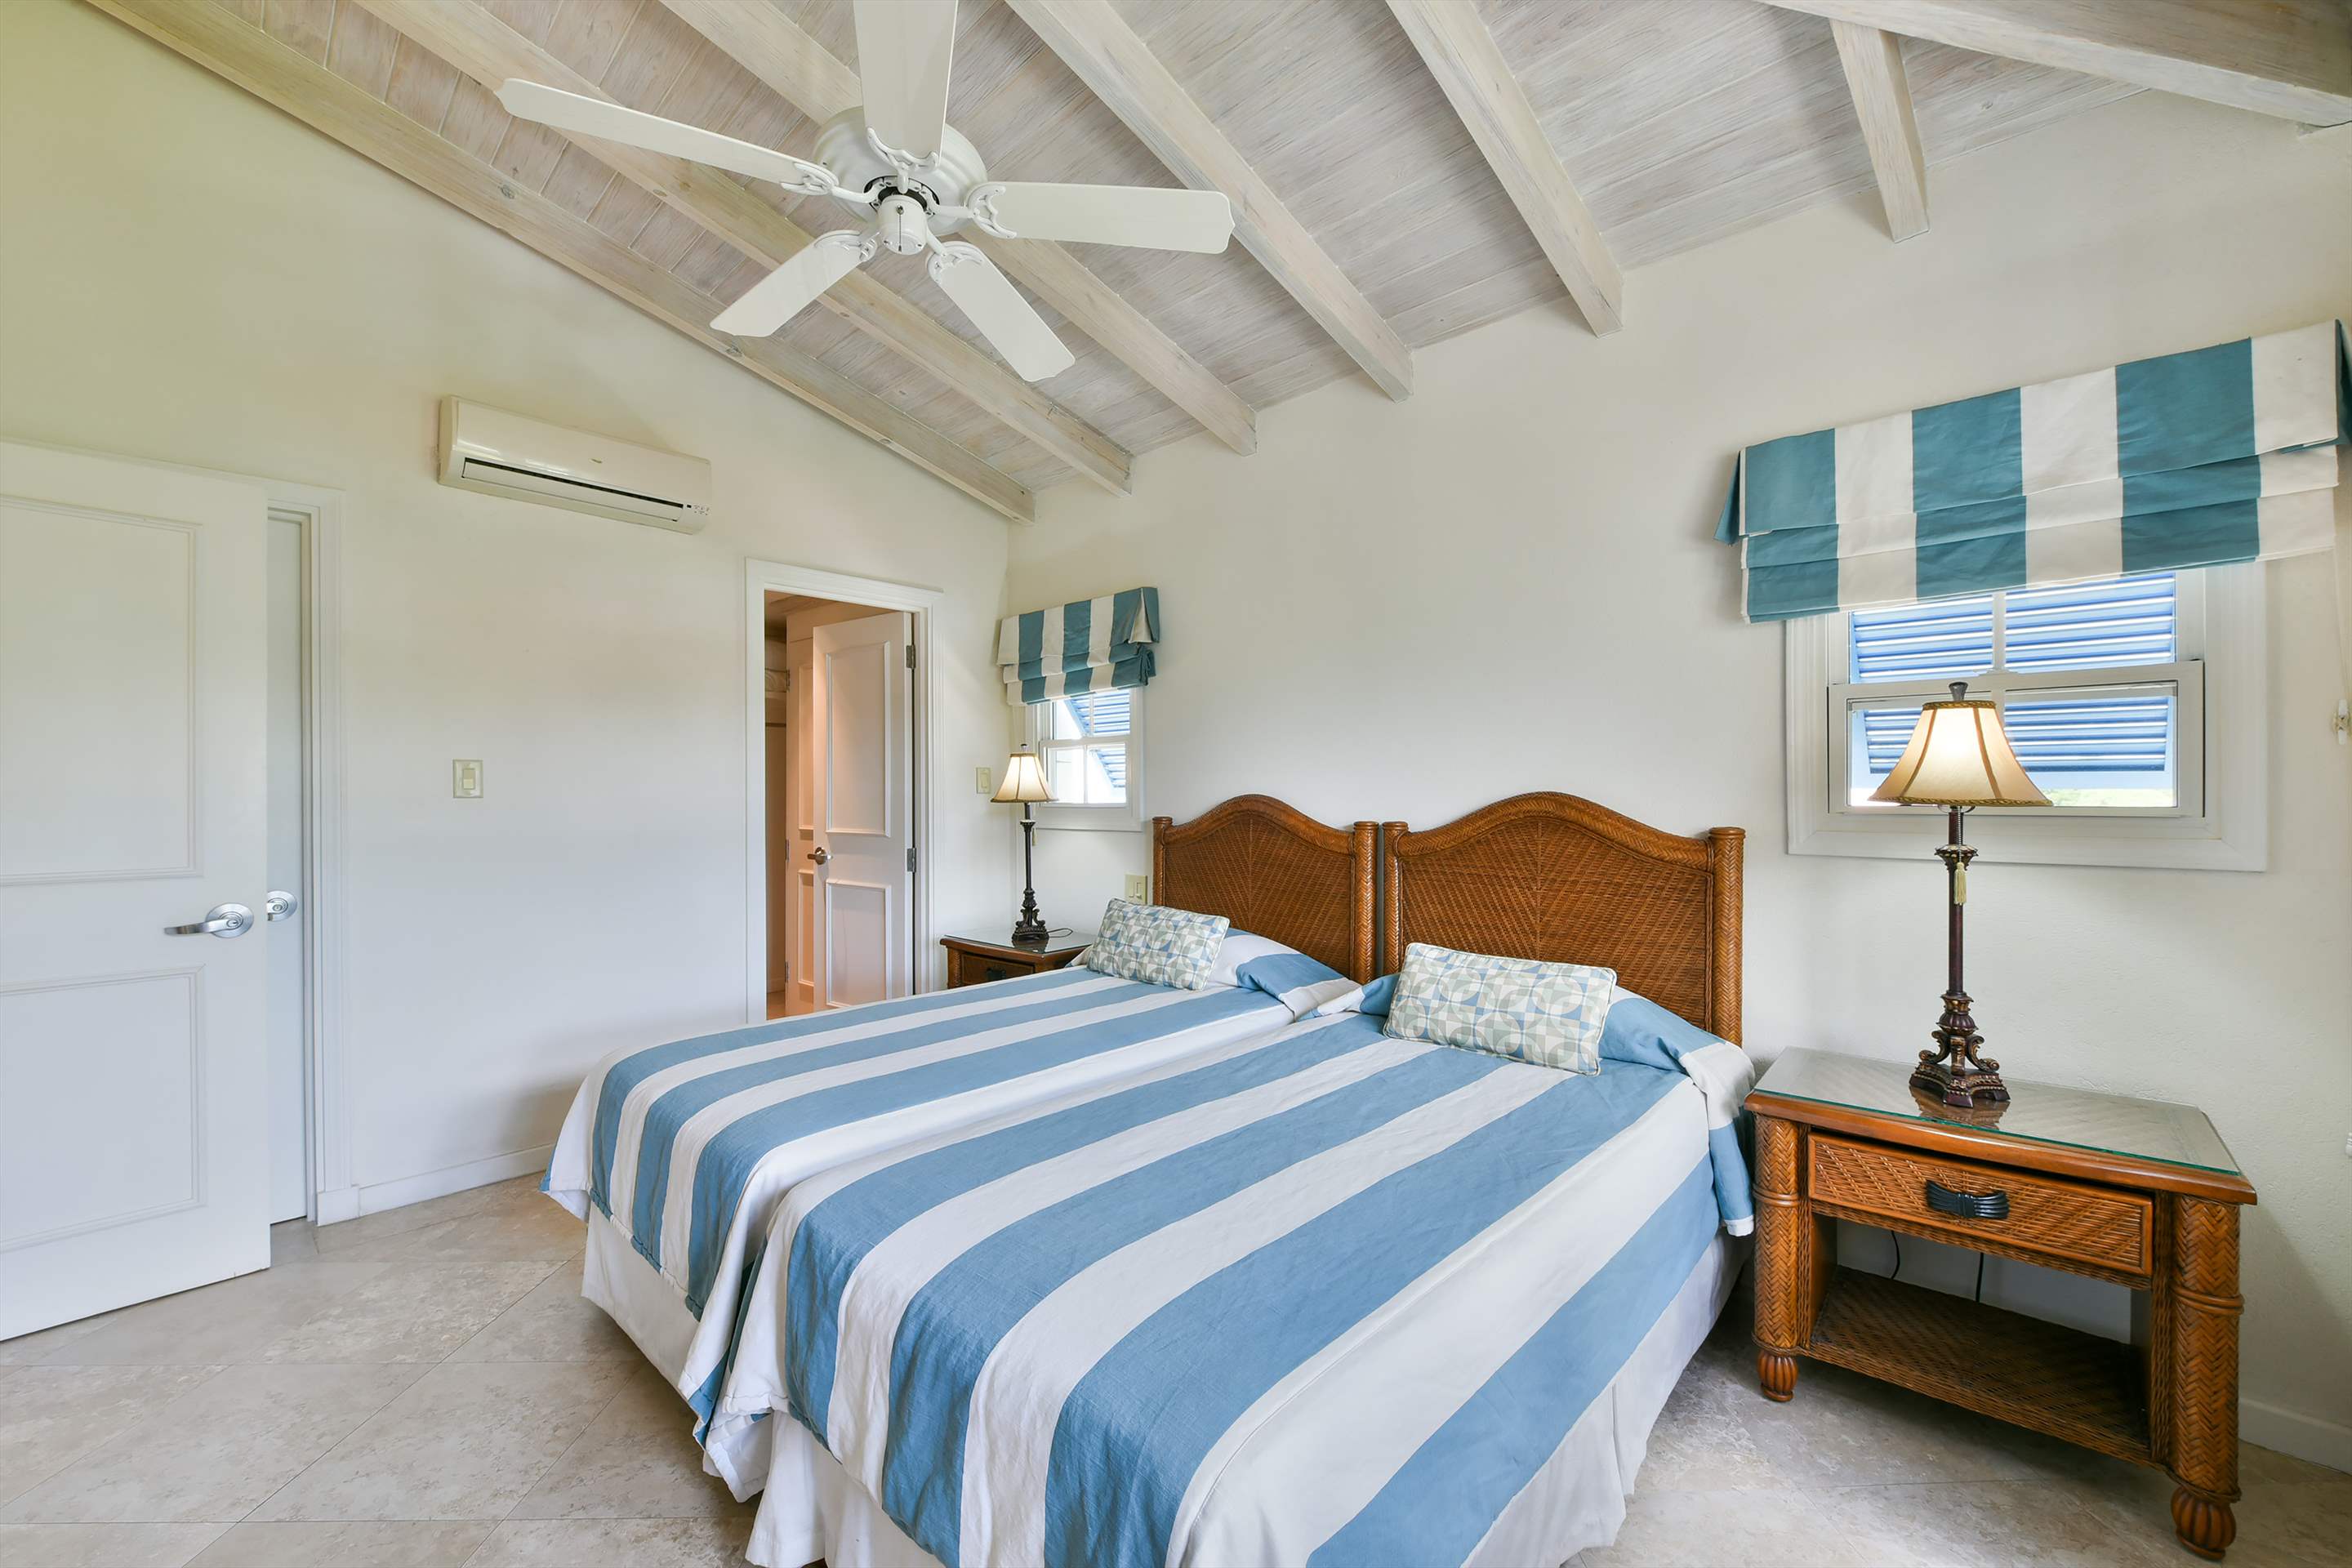 Maxwell Beach Villas 501, 2 bedroom, 2 bedroom villa in St. Lawrence Gap & South Coast, Barbados Photo #16